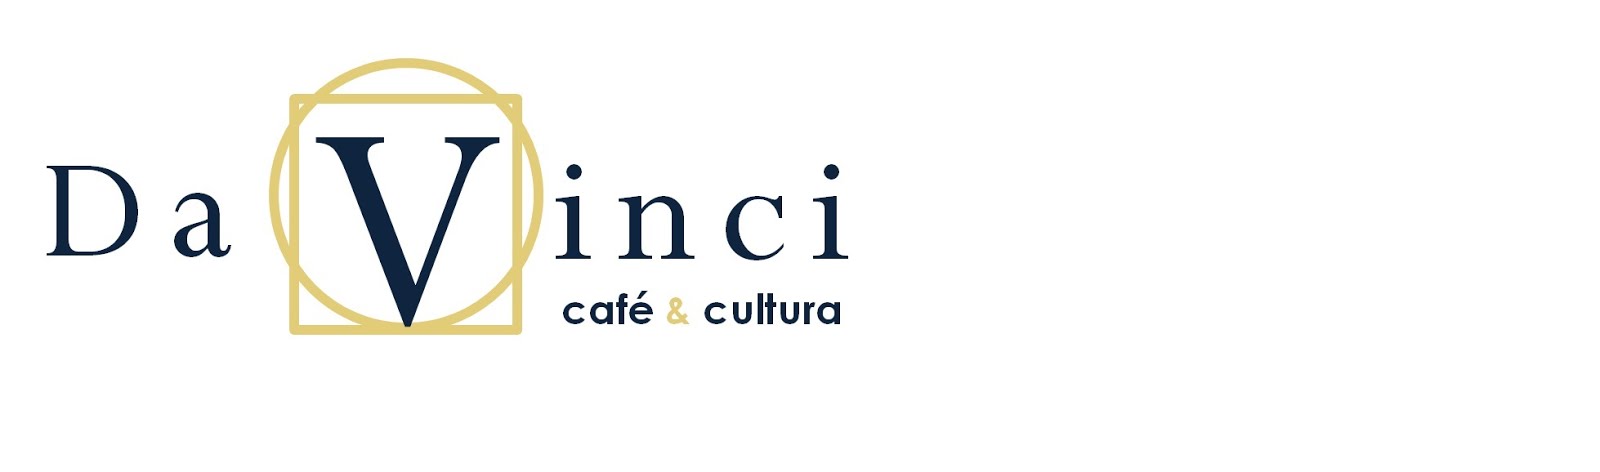 Da Vinci café